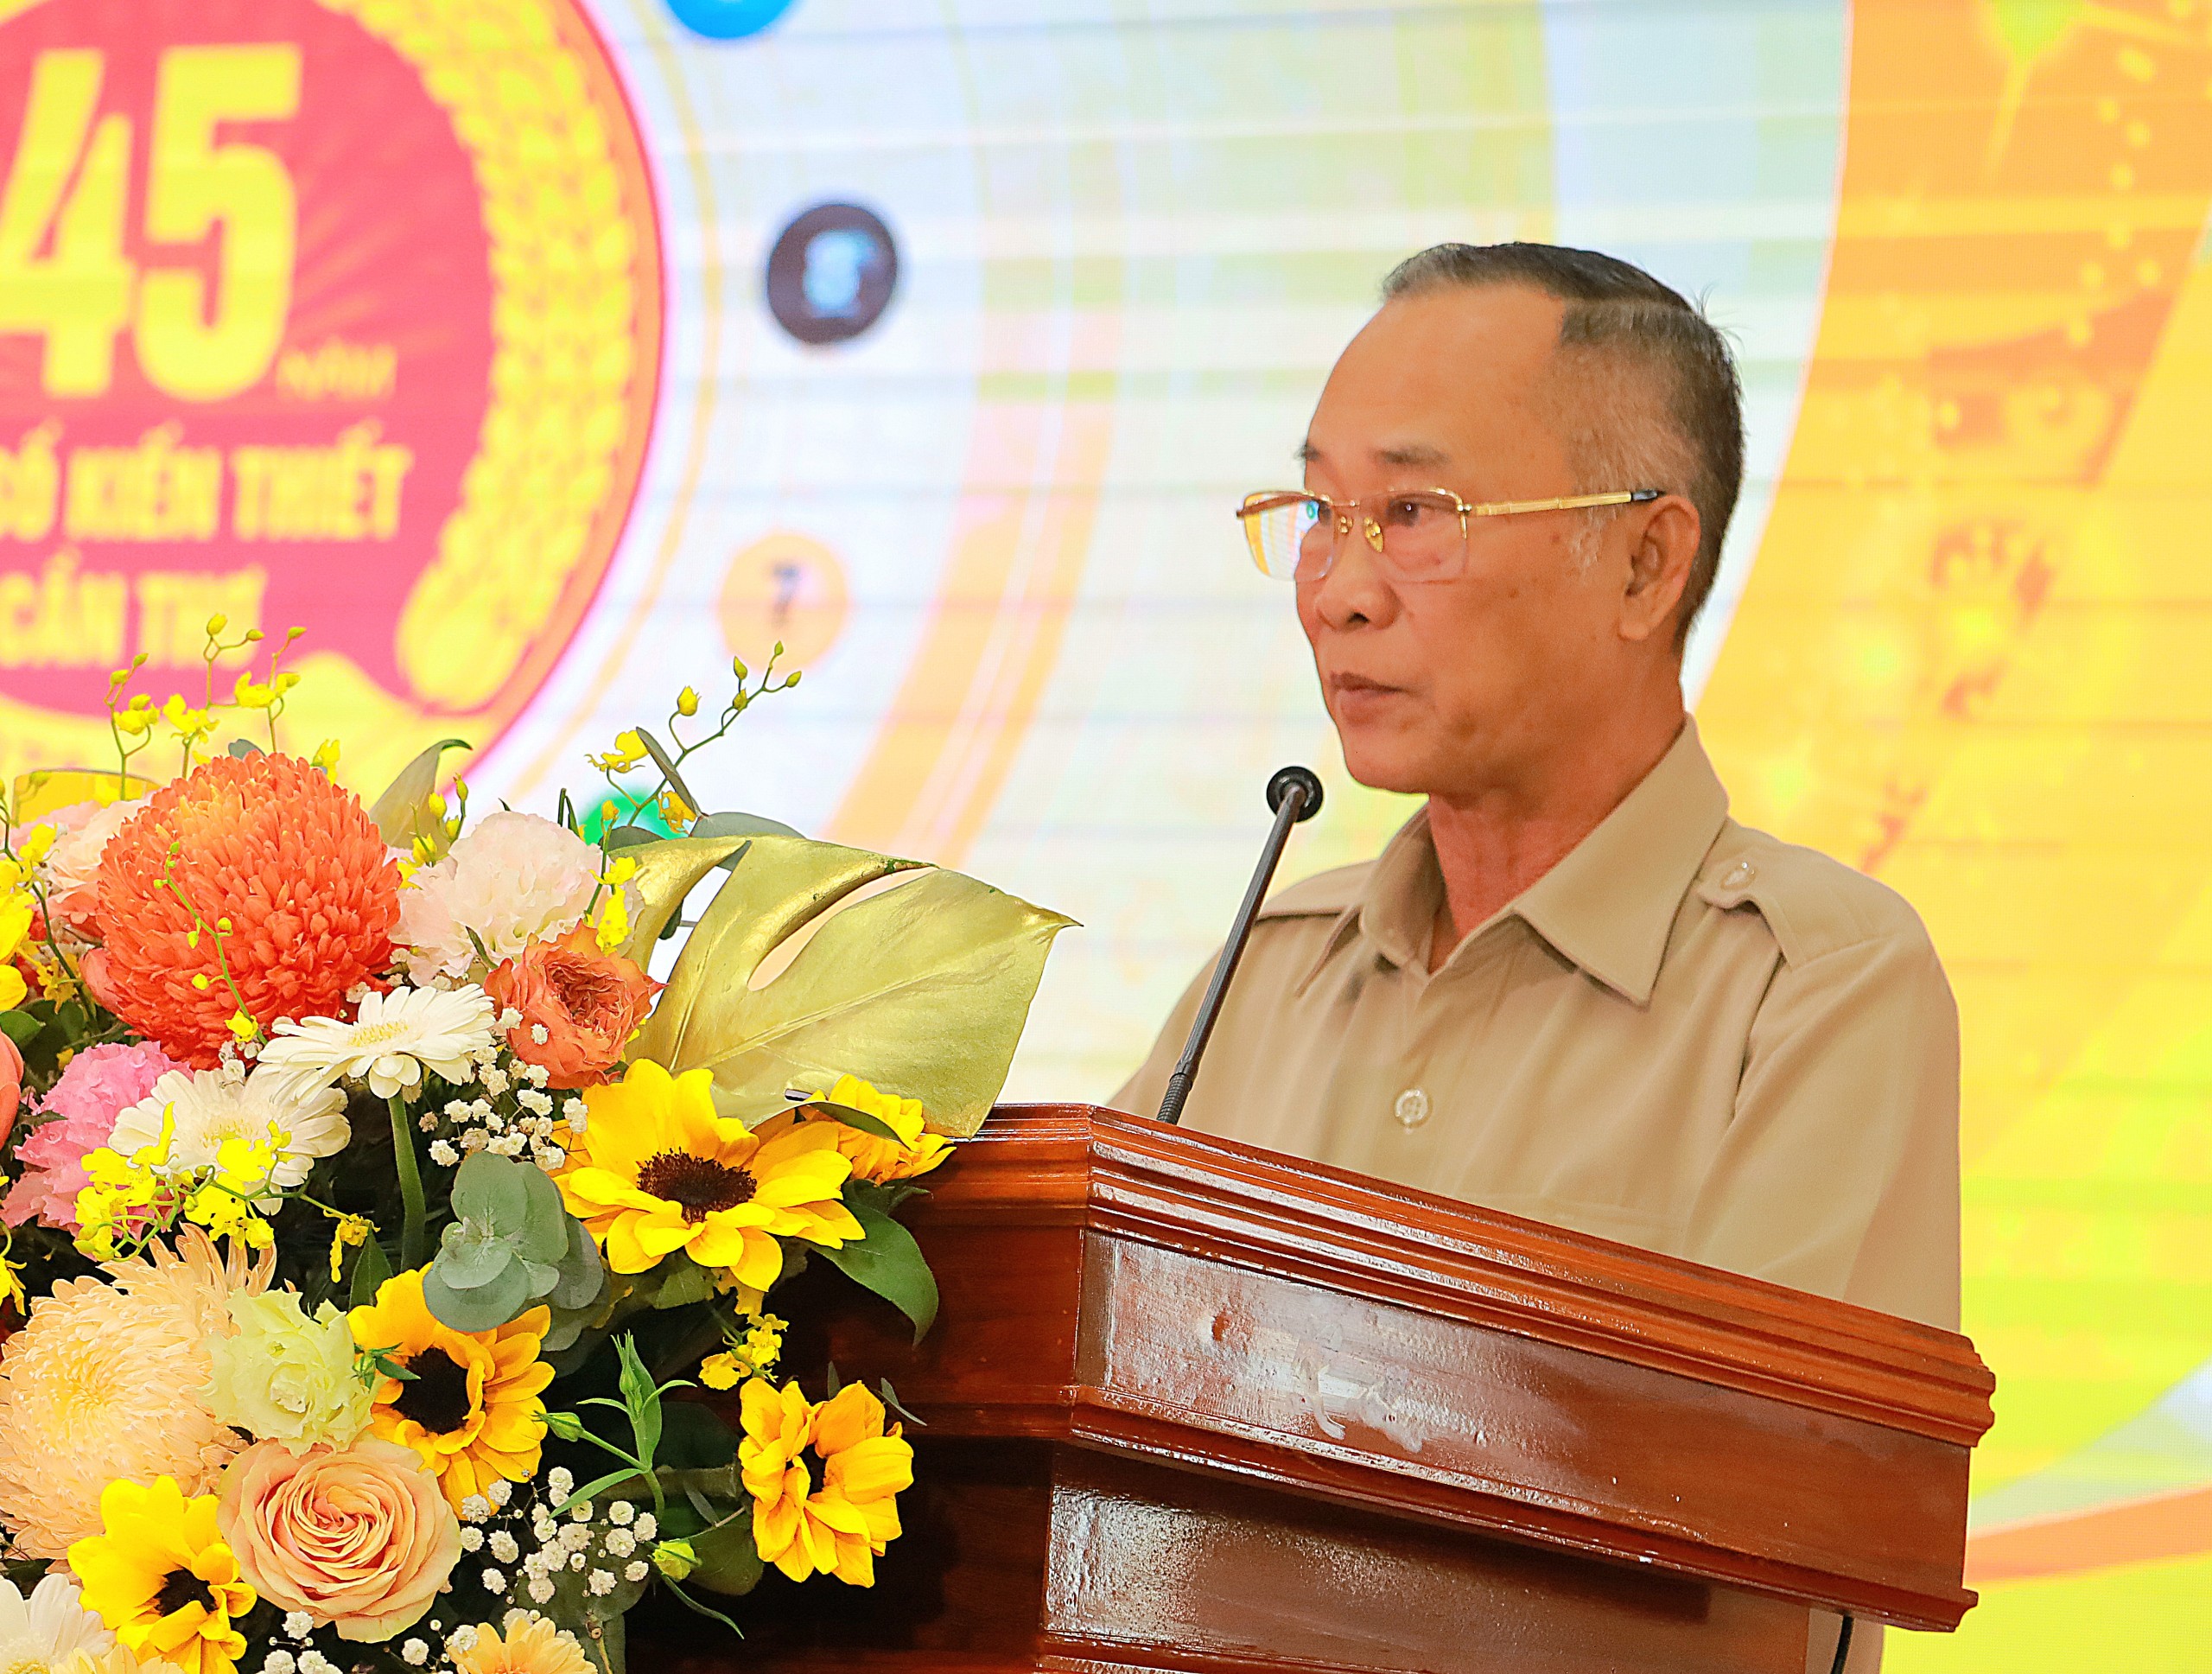 Ông Trần Bình Trọng - Chủ tịch HĐQT, Tổng Giám đốc Công ty CP in tổng hợp Cần Thơ phát biểu tại lễ kỷ niệm.